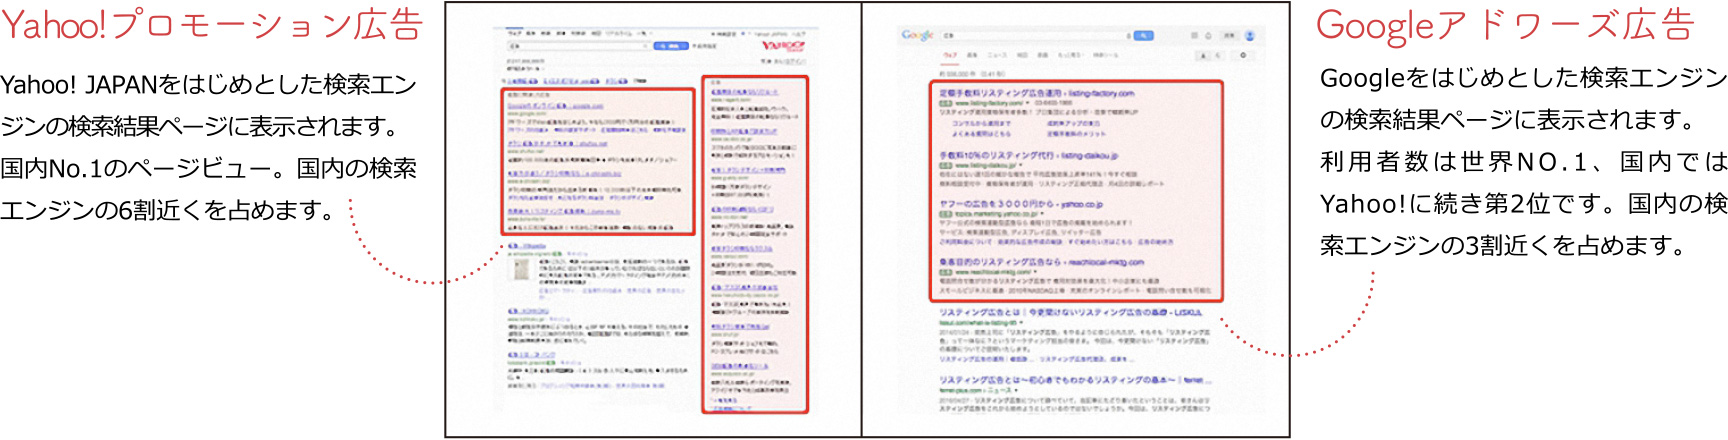 Yahoo!プロモーション広告 Yahoo! JAPANをはじめとした検索エンジンの検索結果ページに表示されます。
	国内No.1のページビュー。国内の検索エンジンの6割近くを占めます。Googleアドワーズ広告 Googleをはじめとした検索エンジンの検索結果ページに表示されます。
	利用者数は世界NO.1、国内ではYahoo!に続き第2位です。国内の検索エンジンの3割近くを占めます。